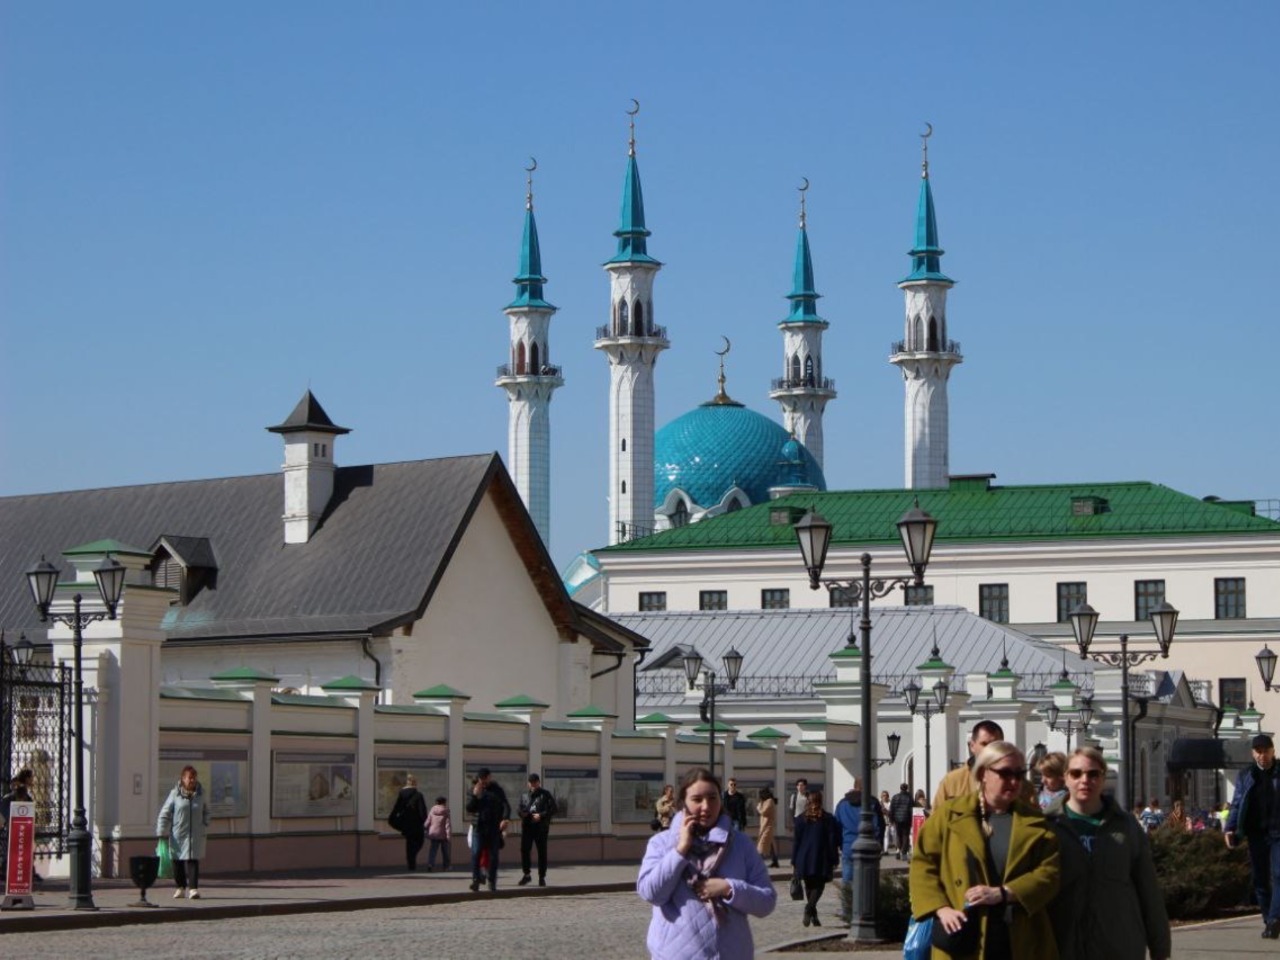 Автобусный сити-тур в Казани с визитом в Кремль | Цена 1500₽, отзывы, описание экскурсии